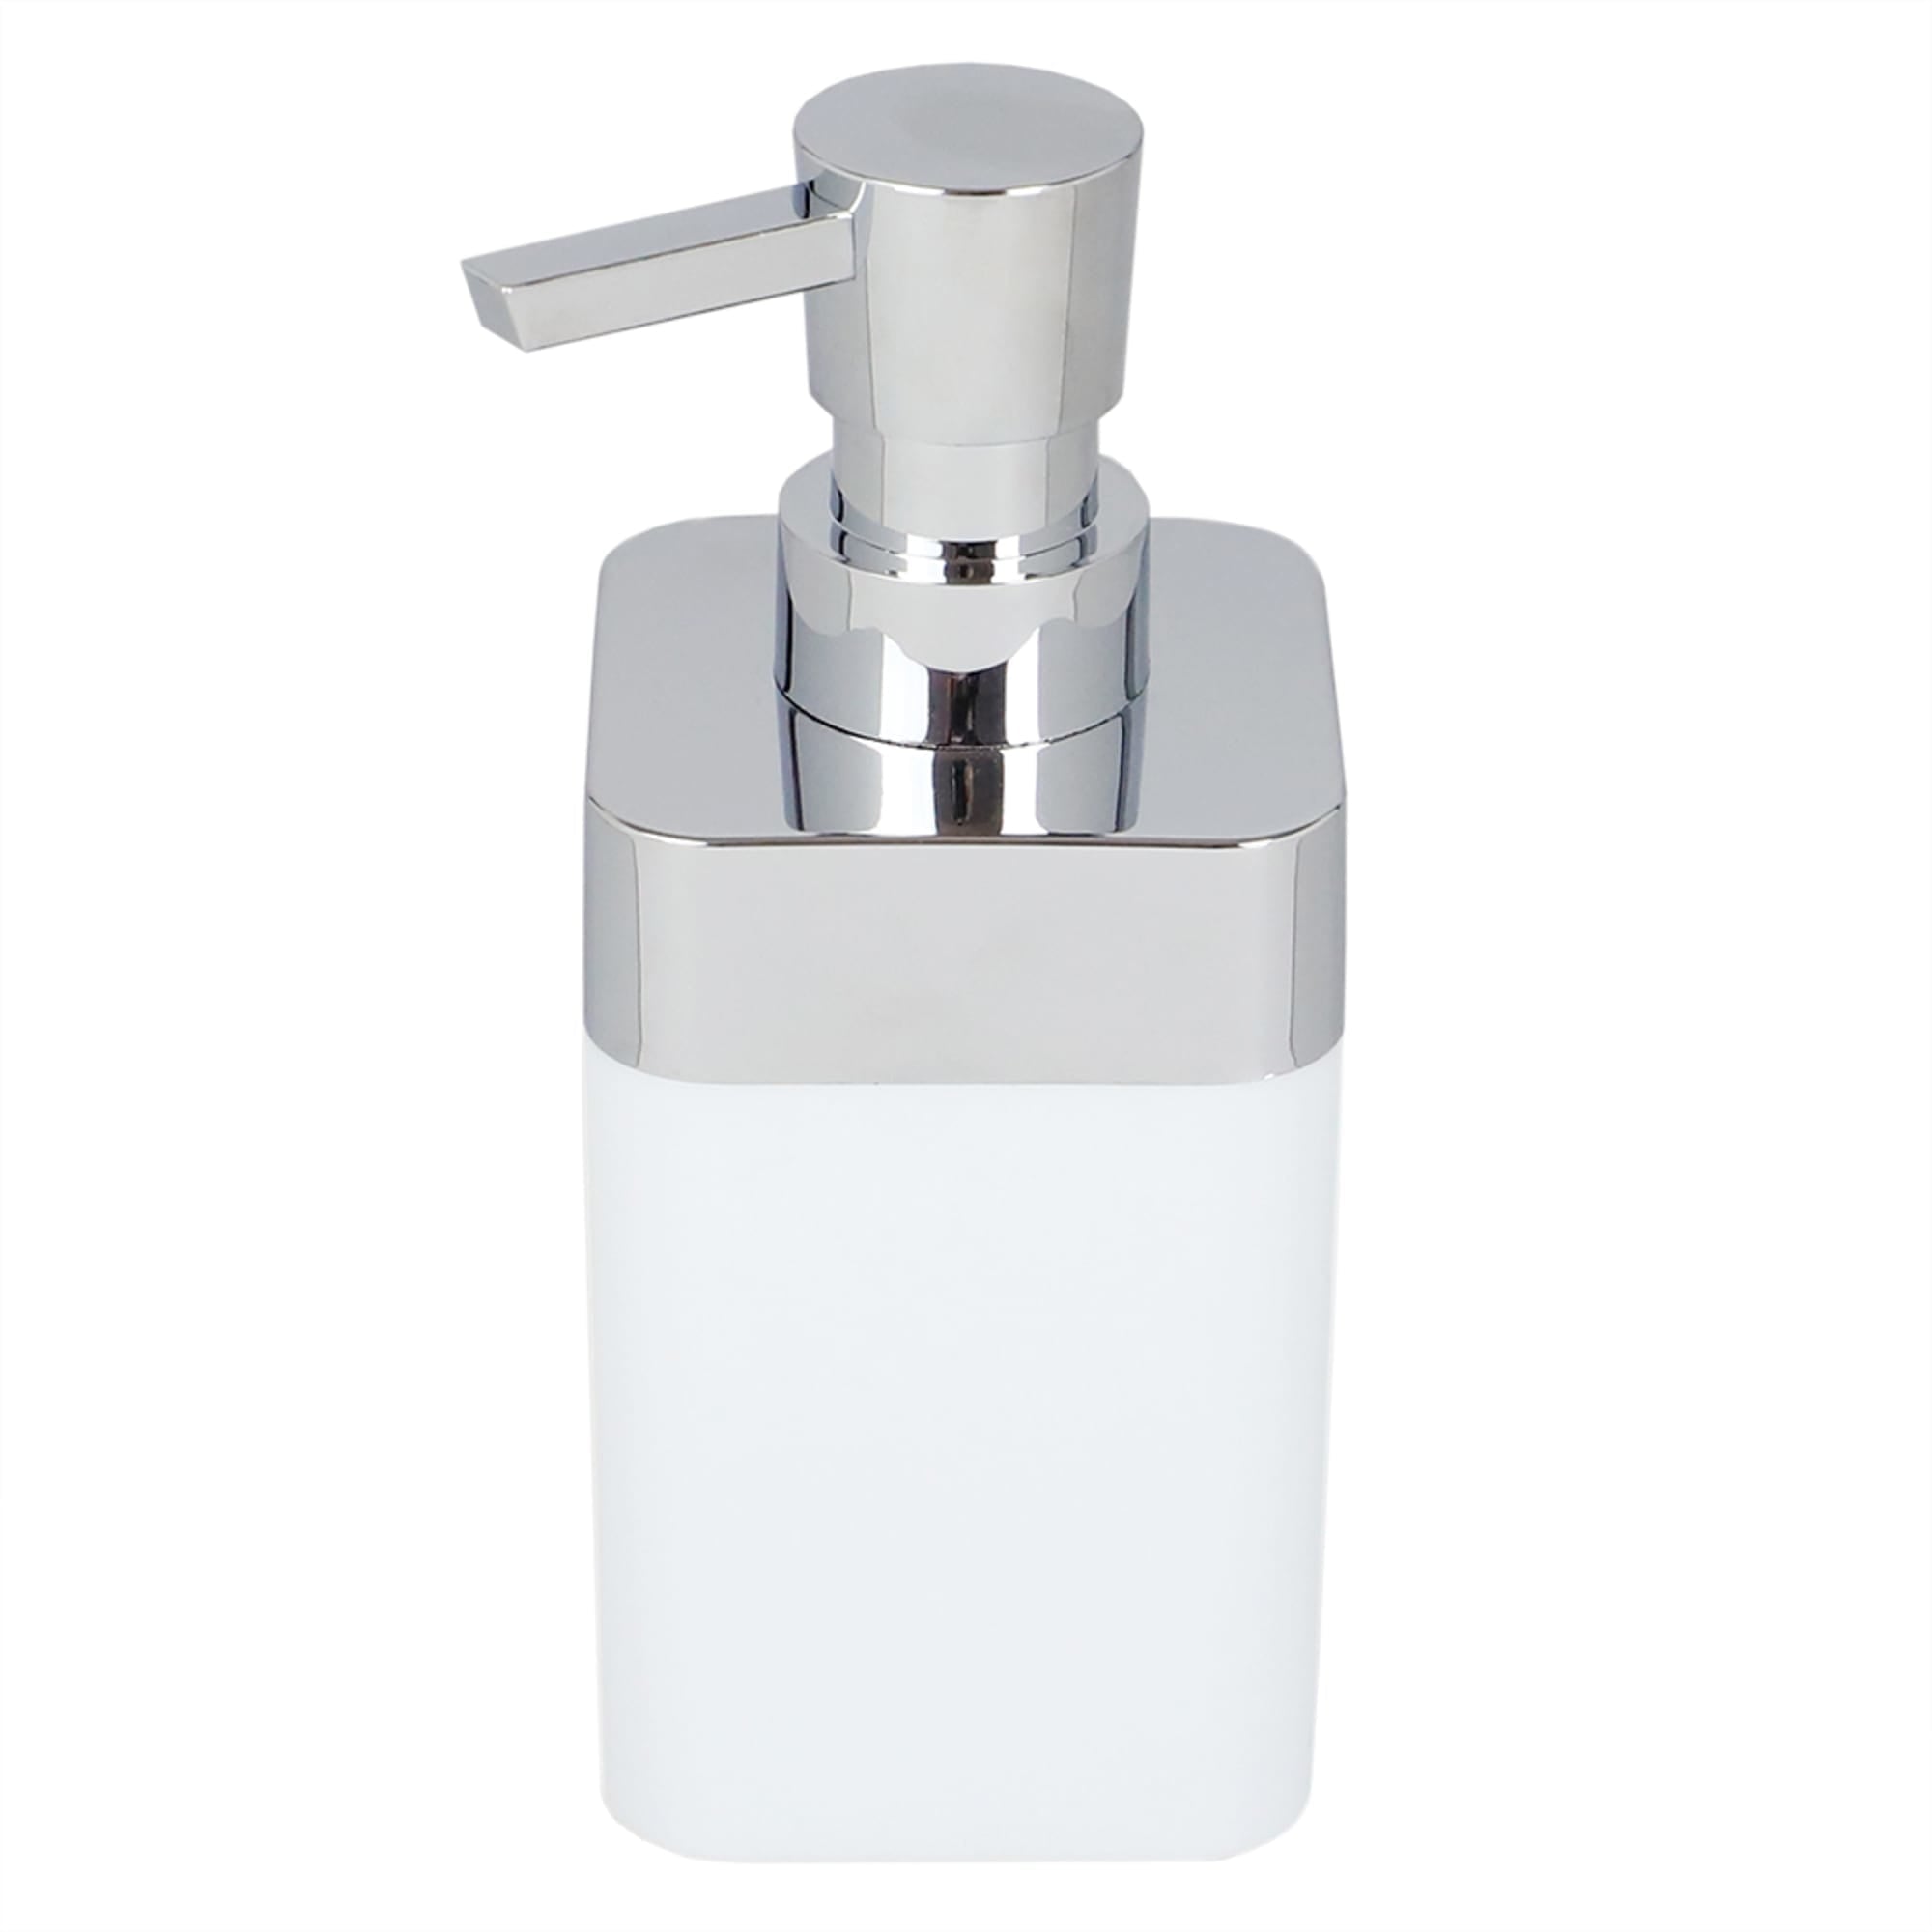 Home Basics Skylar 10 oz. ABS Plastic Soap Dispenser, White $4.00 EACH, CASE PACK OF 12